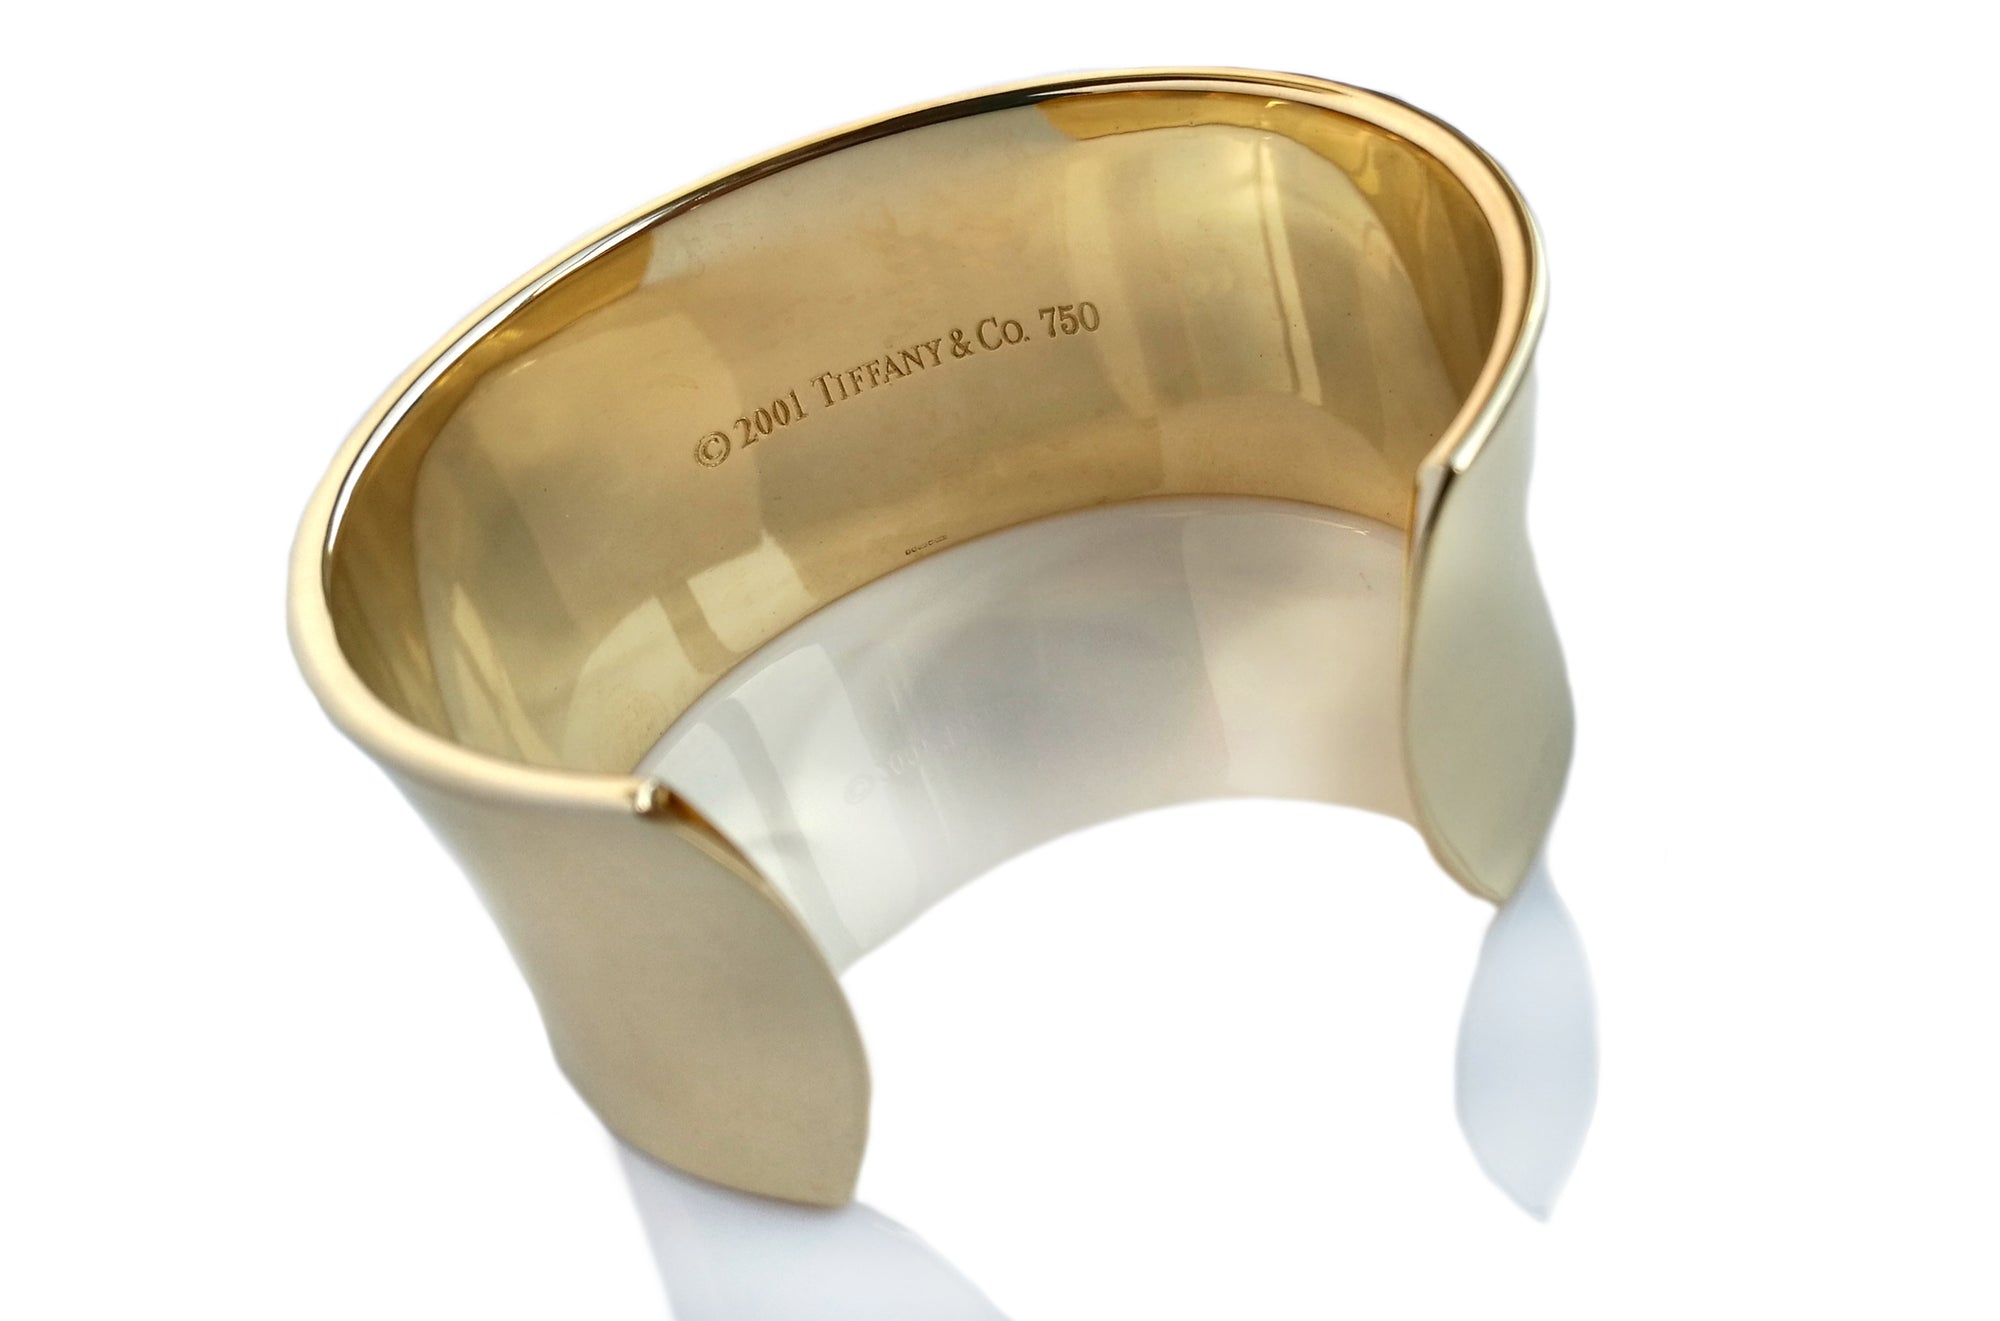 Tiffany & Co 1837 18k Gold Bangle Cuff Bracelet 16 cms (6.3")